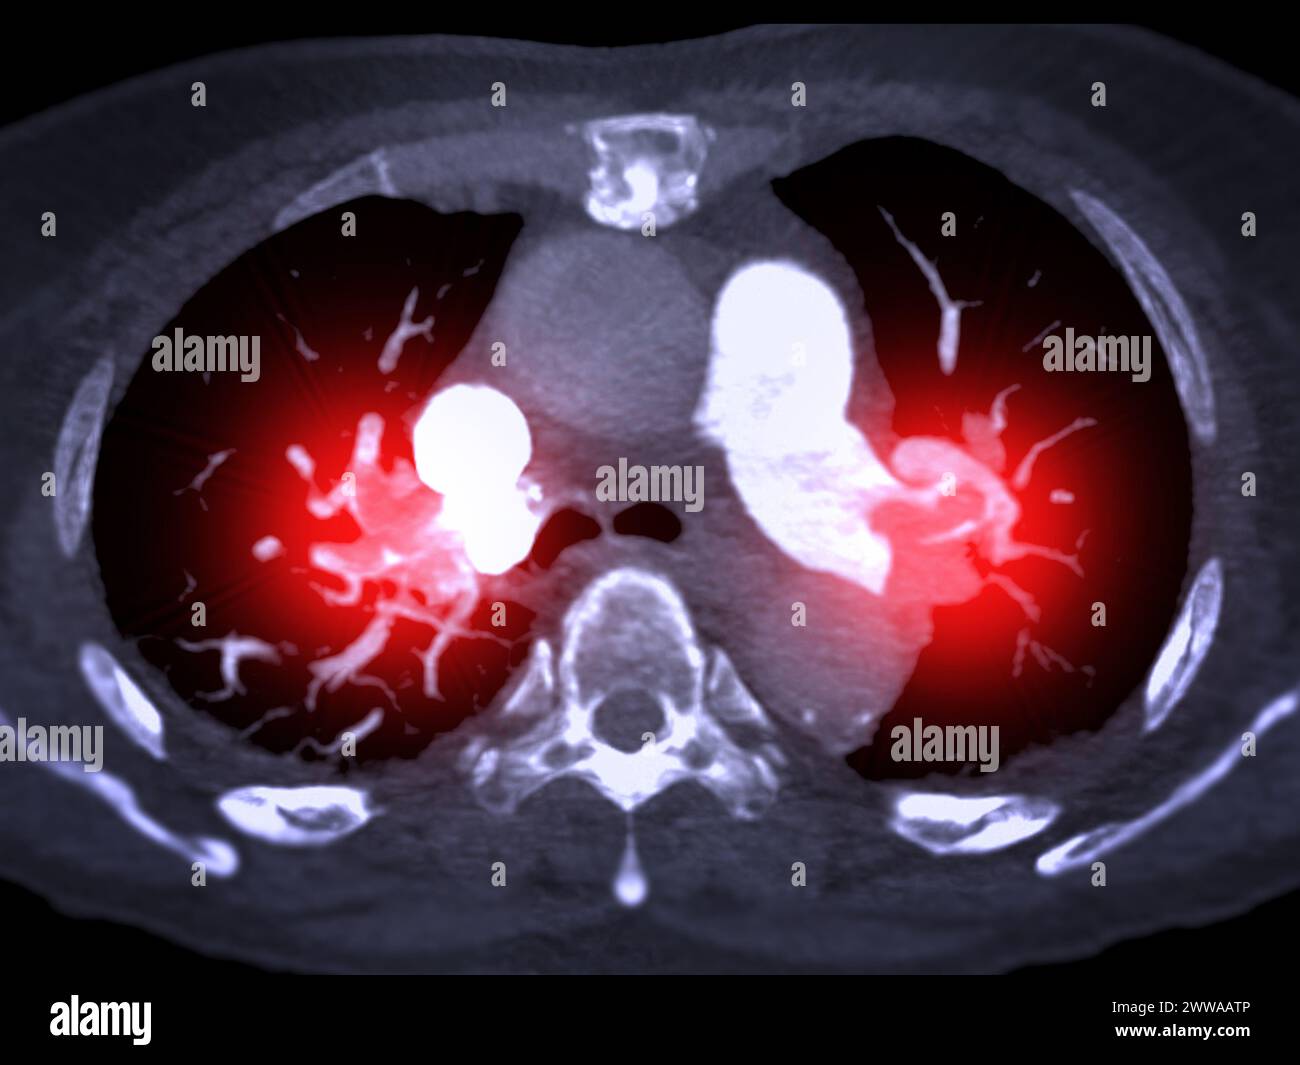 Une artère pulmonaire TDM révèle une vue détaillée des vaisseaux sanguins pulmonaires, capturant la présence d'une embolie pulmonaire, une condition où une cl de sang Banque D'Images